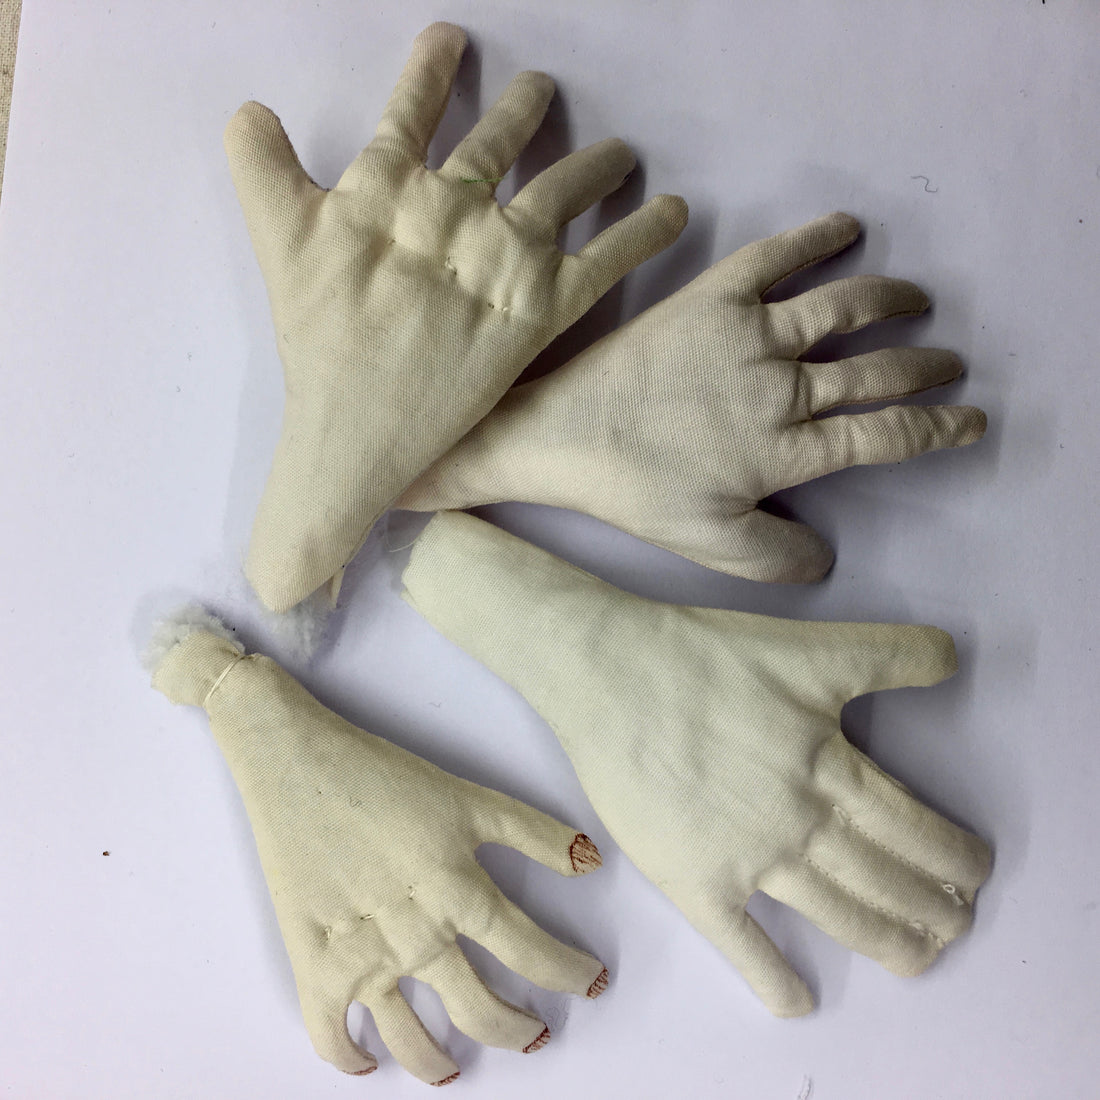 Making Five Finger Hands